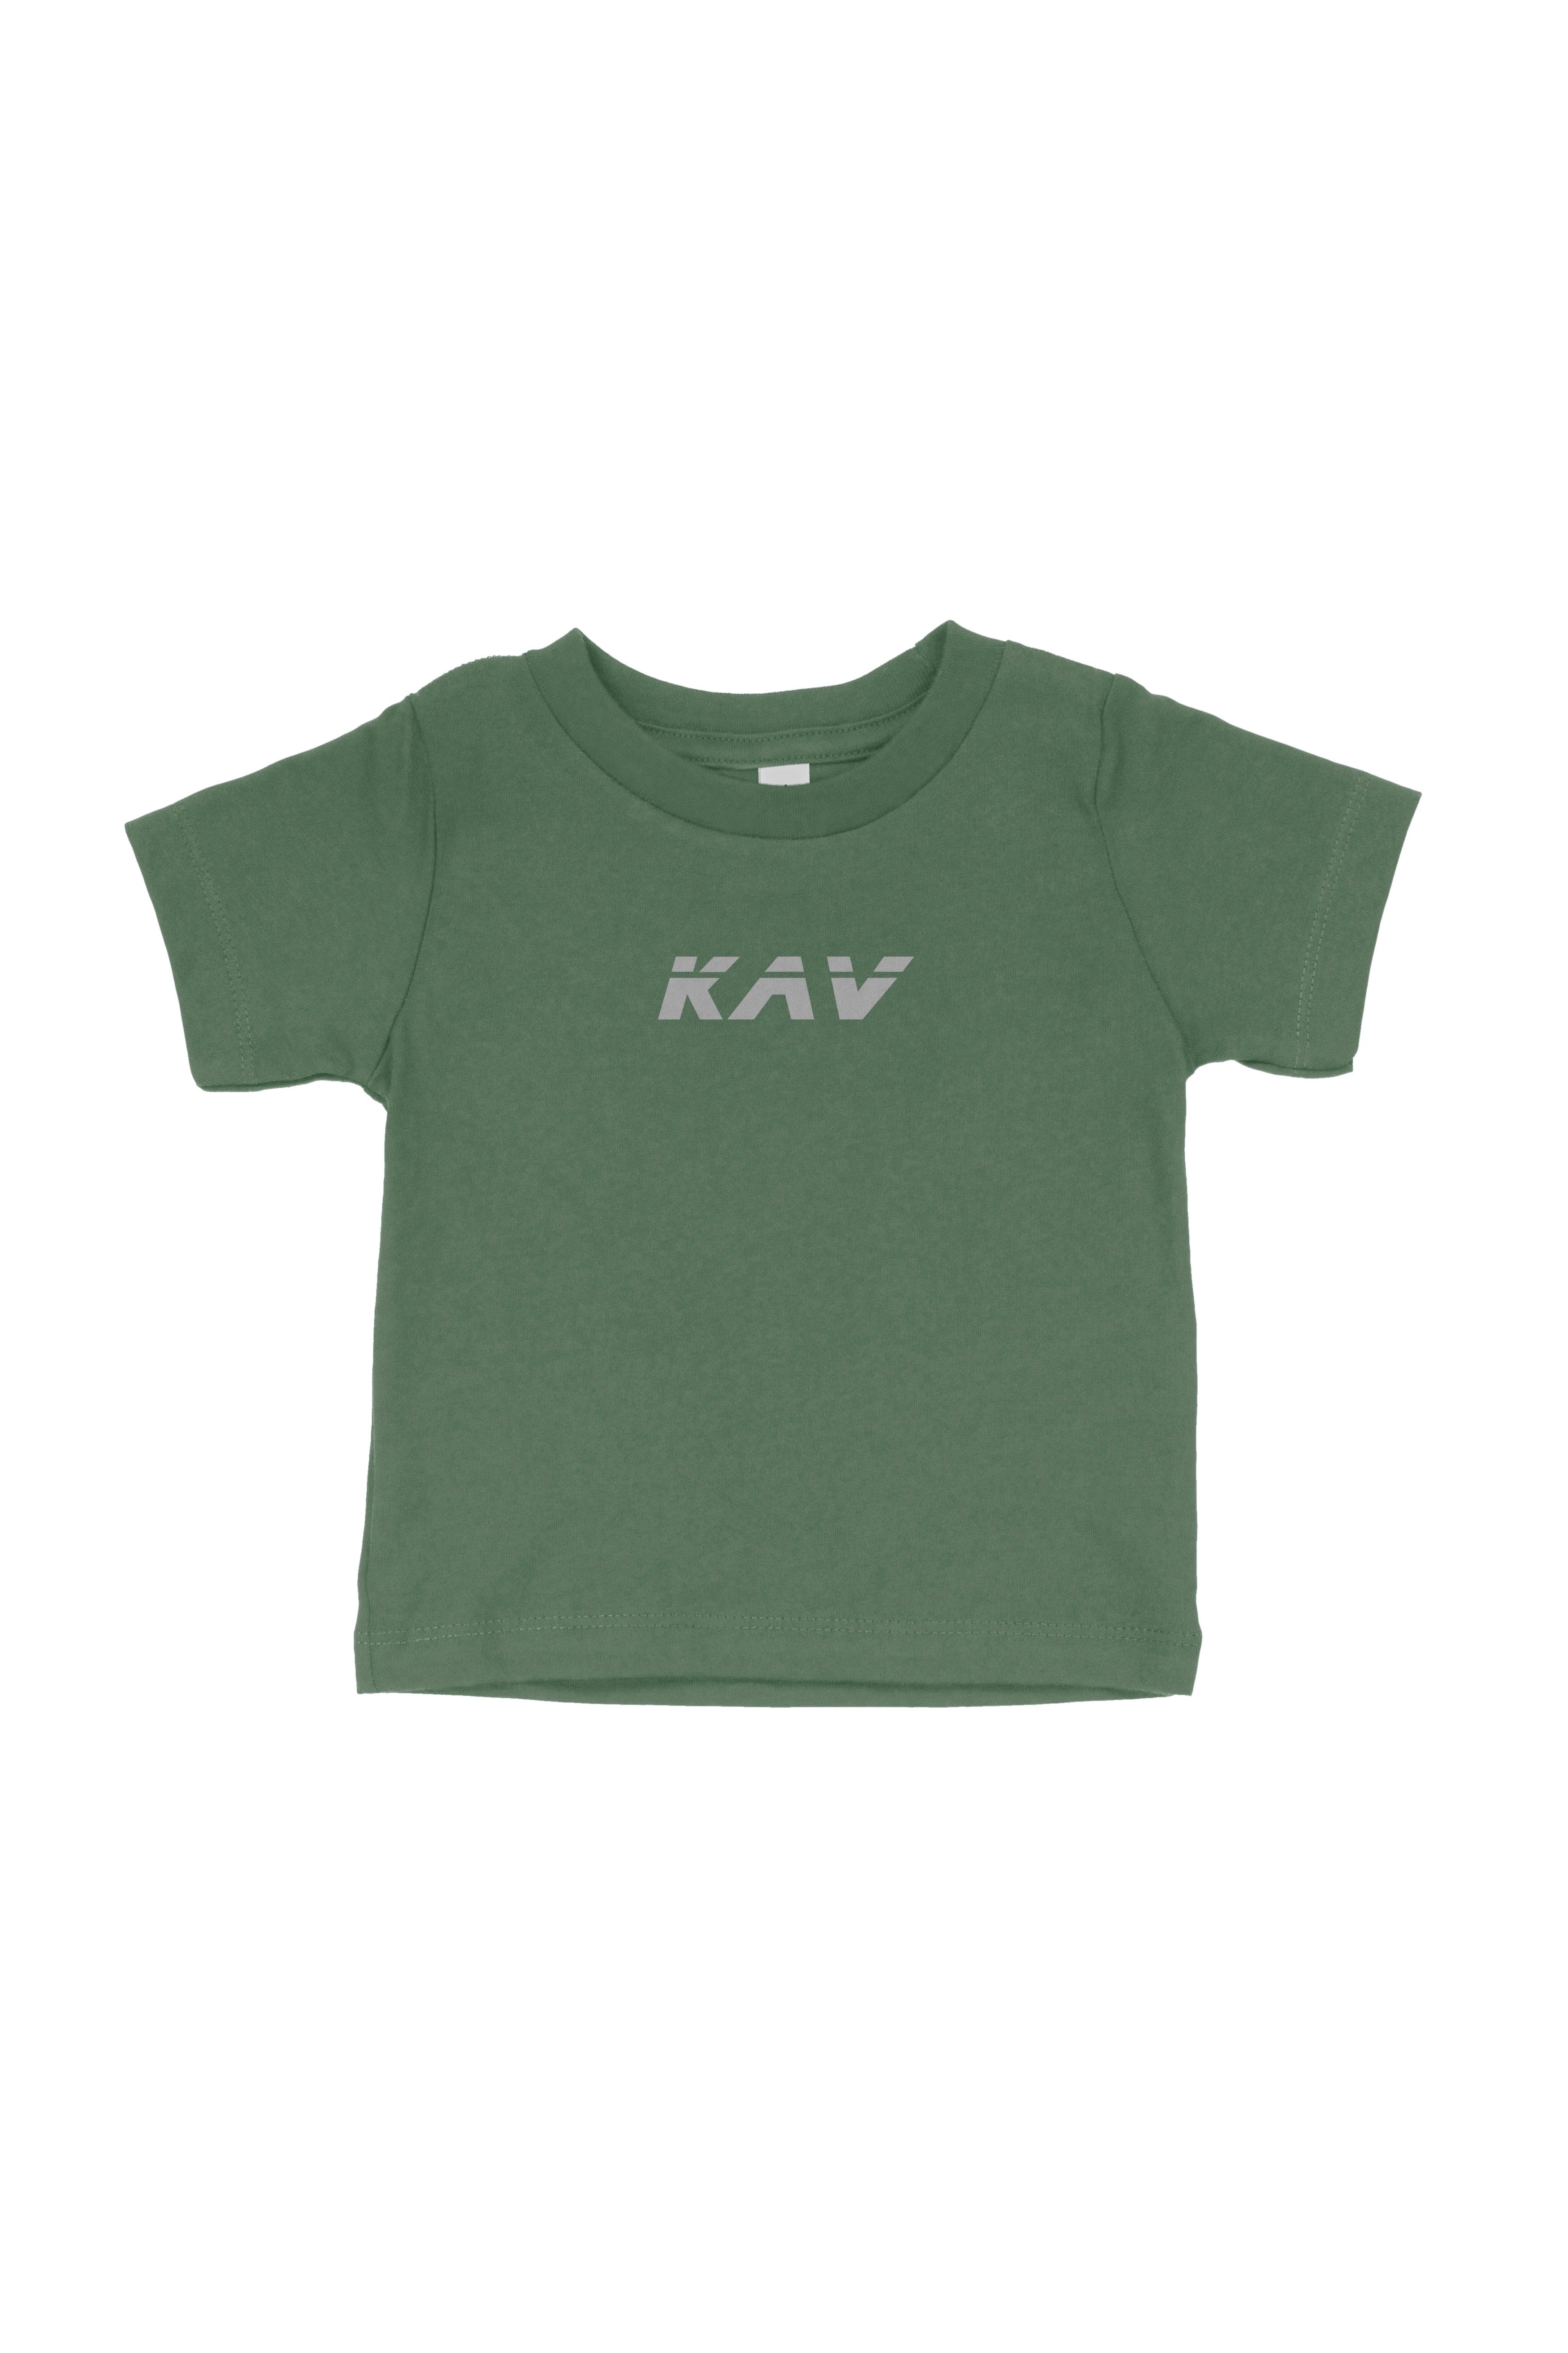 Camiseta para bebé verde